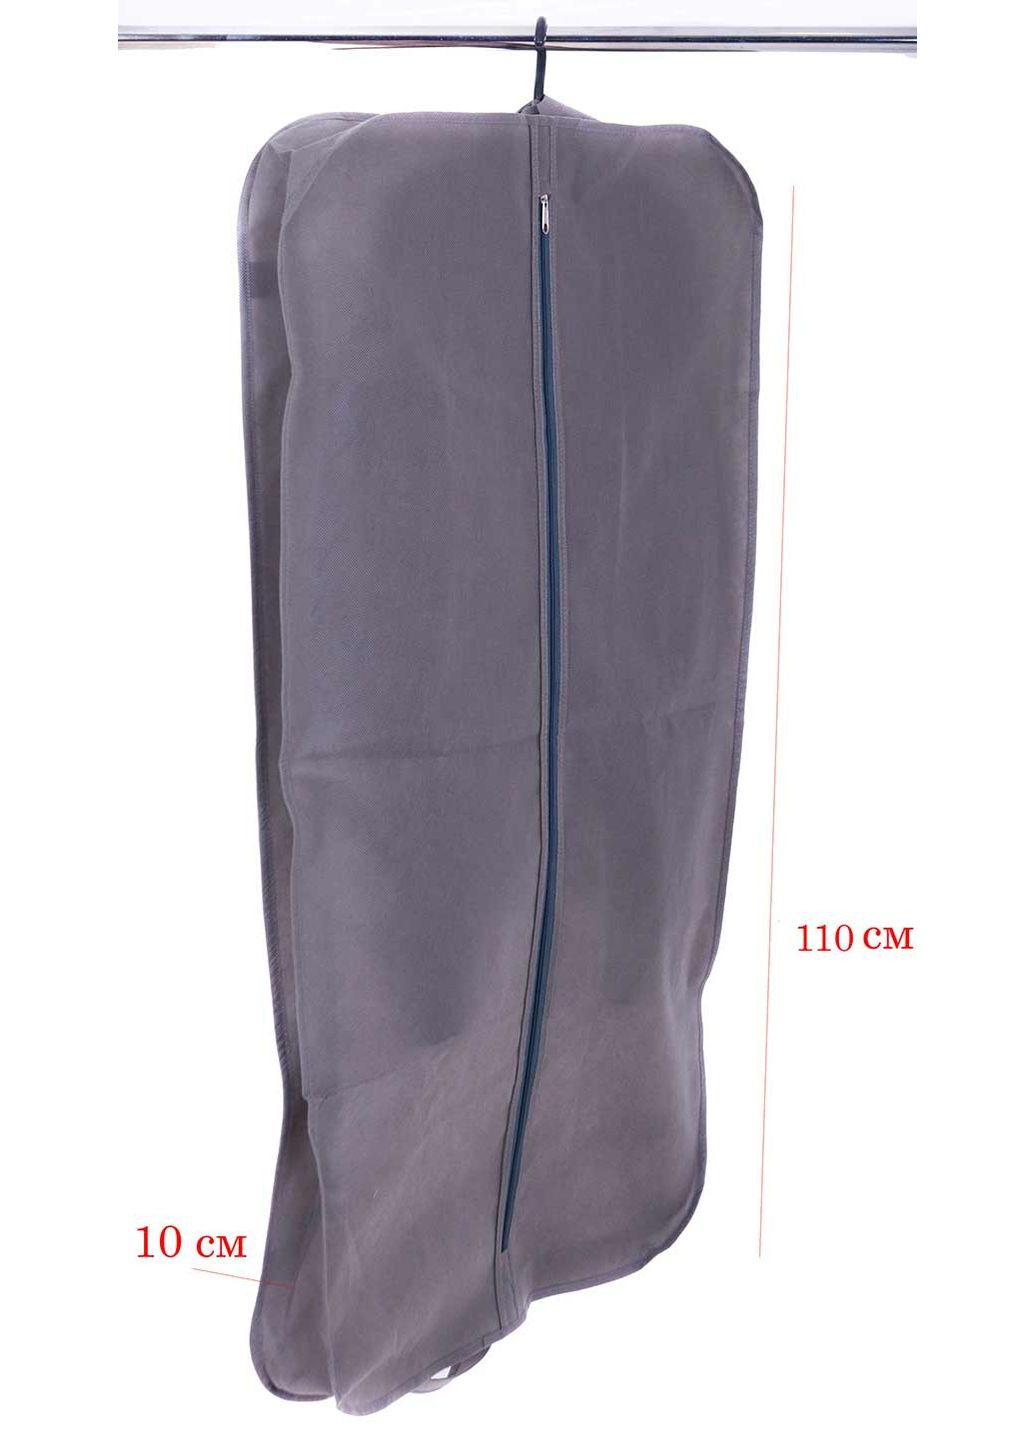 Кофр для одежды с ручками 110х60х10 см HCh110-10-grey () Organize (264032521)